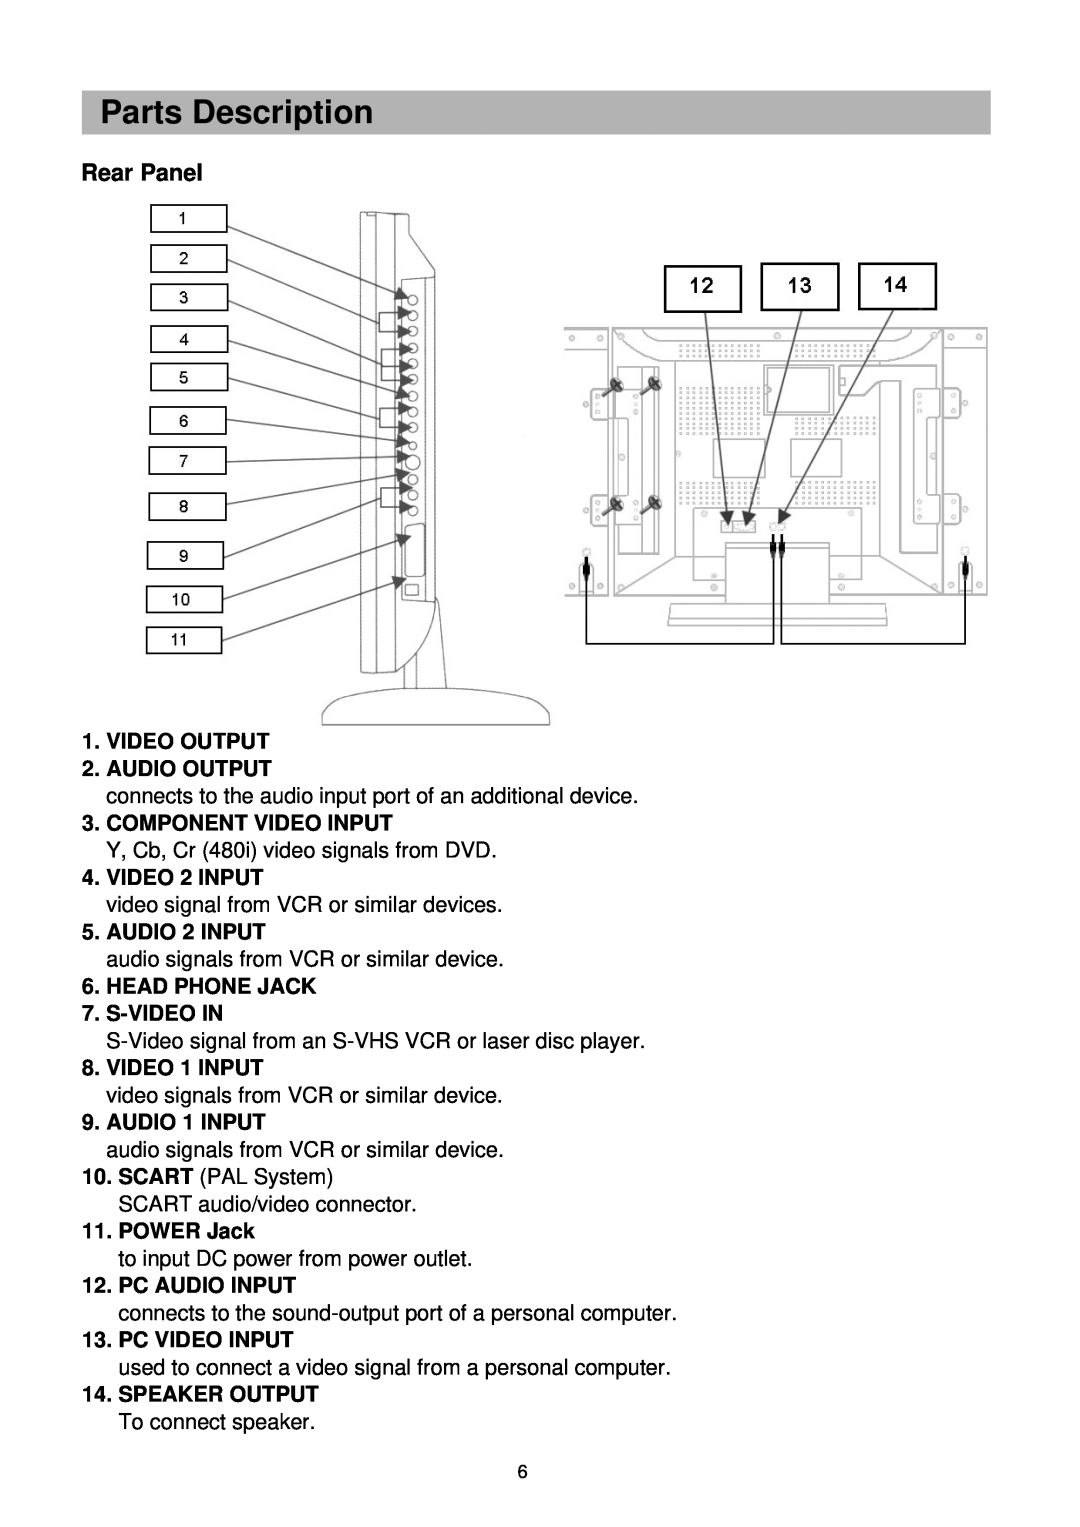 Palsonic TFTV-201 owner manual Rear Panel, Parts Description 